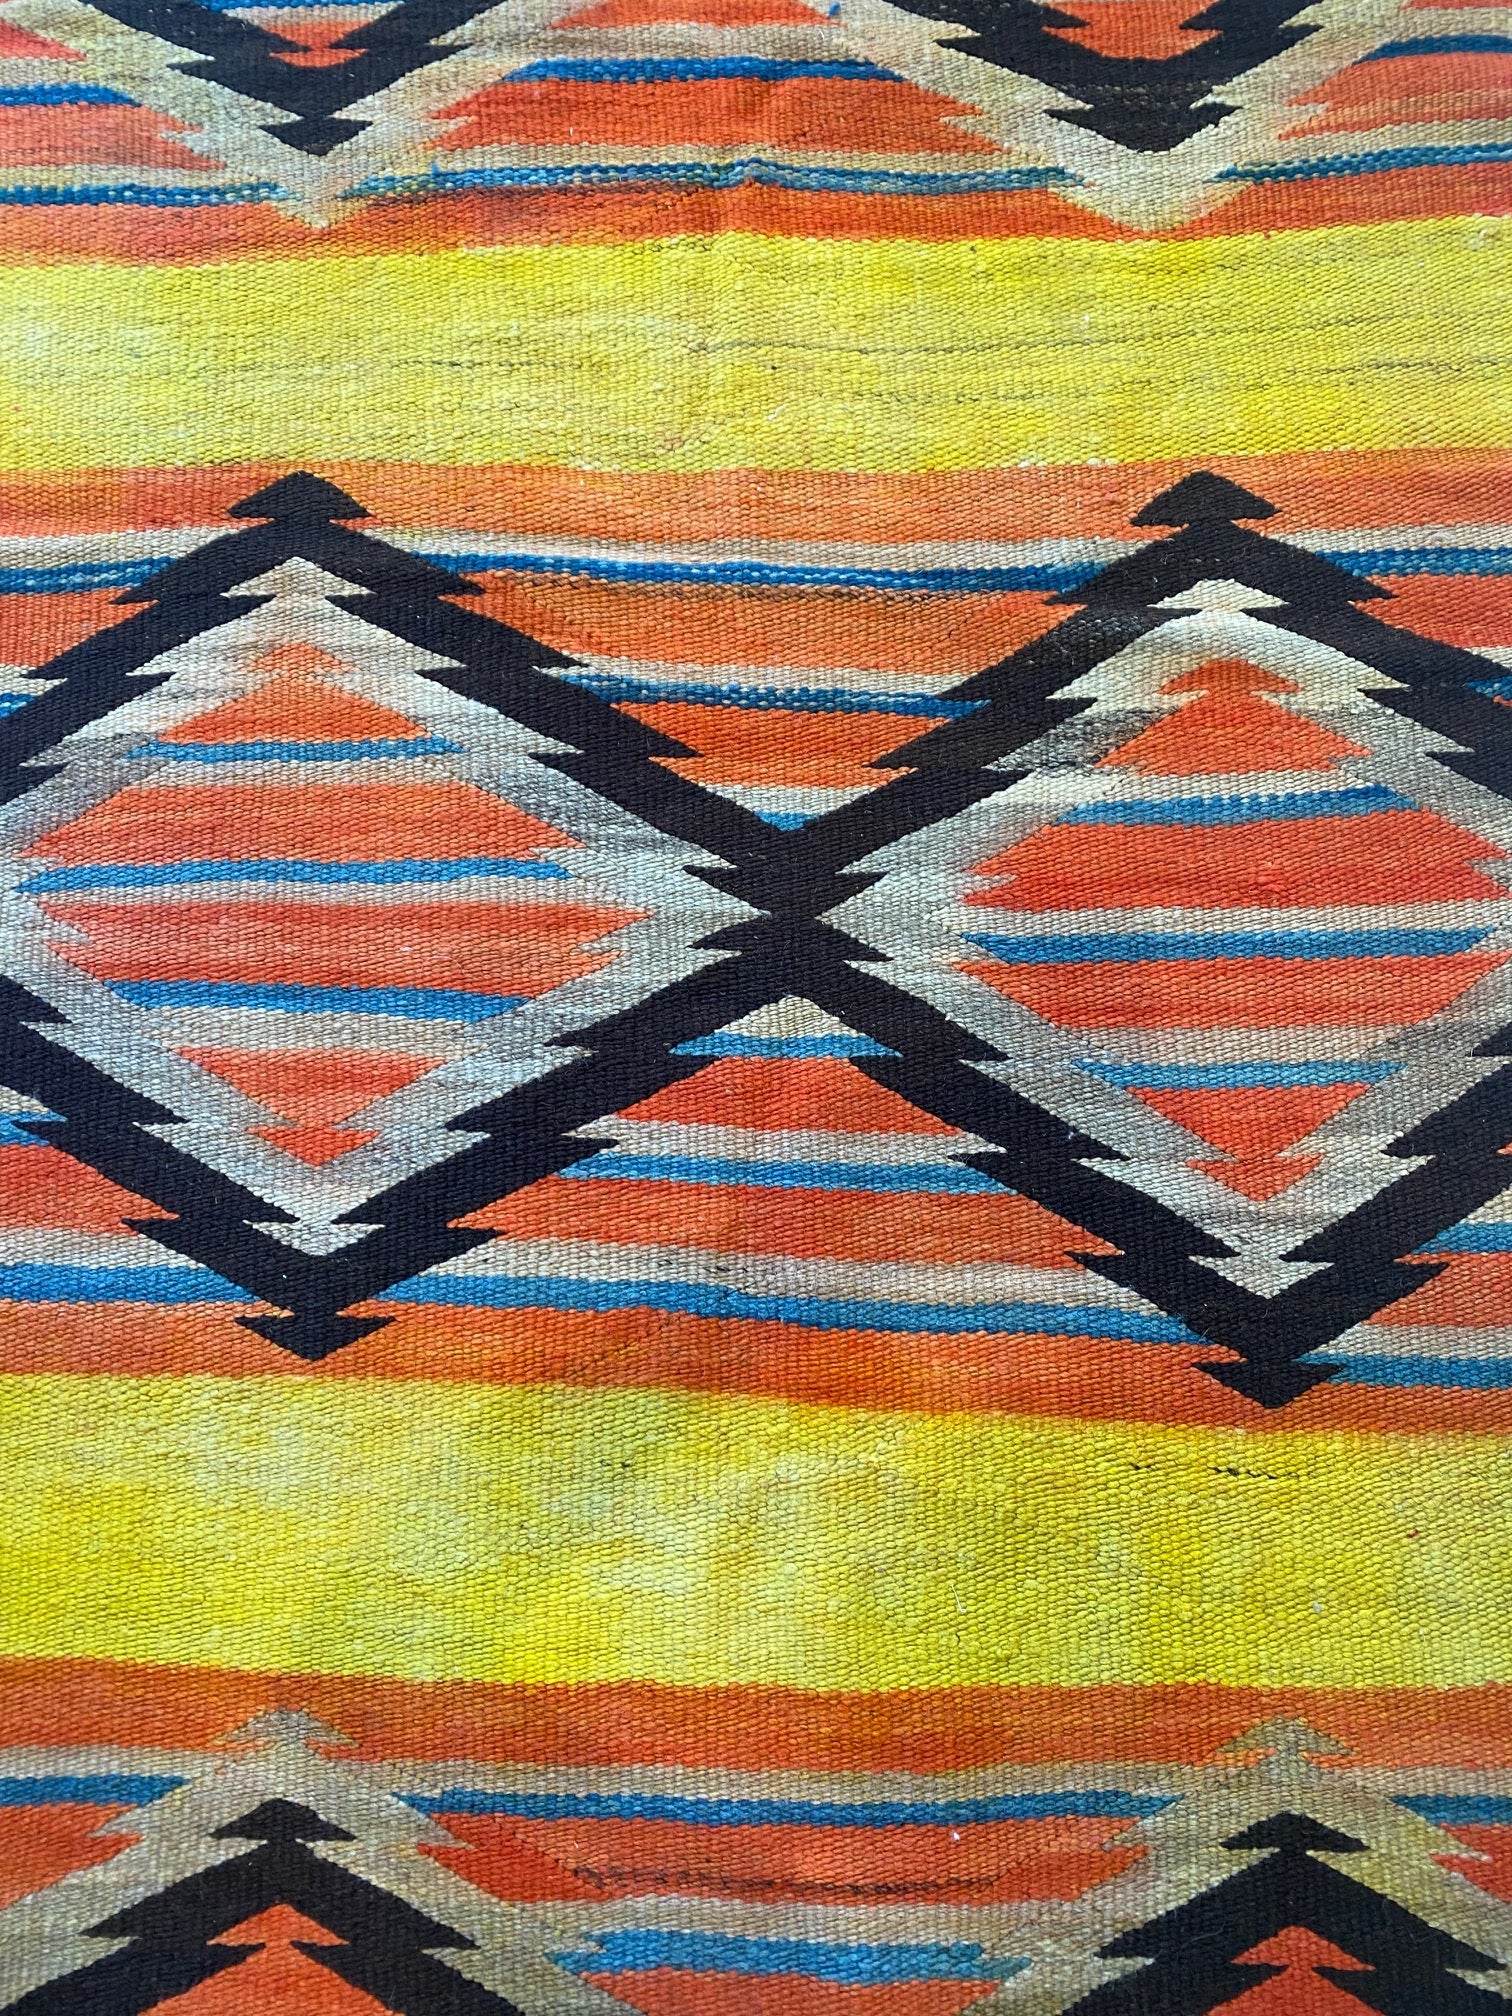 antique navajo wearing blanket, telluride, navajo weaving, rug